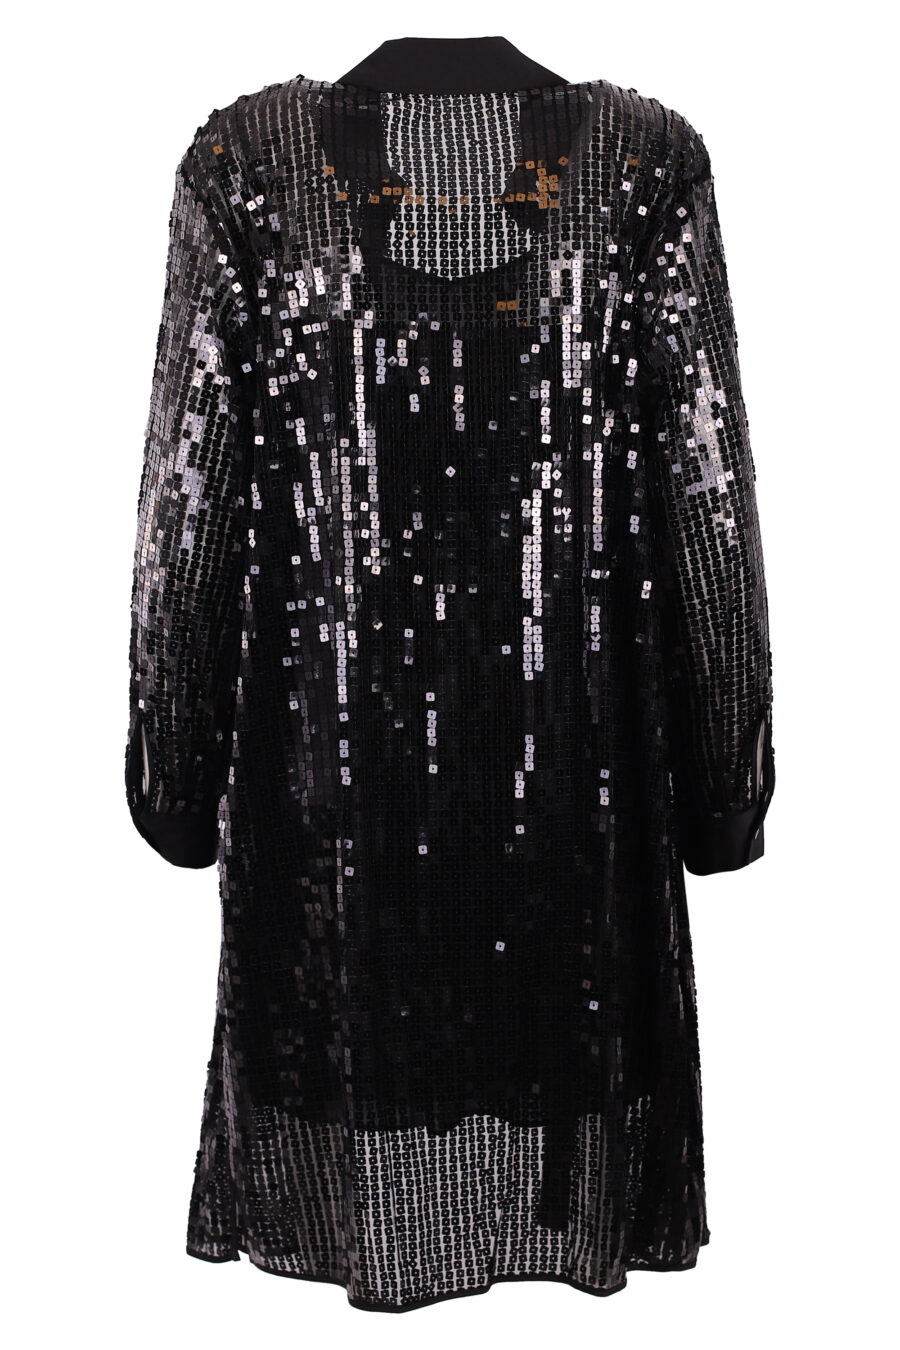 Robe tunique noire à paillettes - IMG 6264